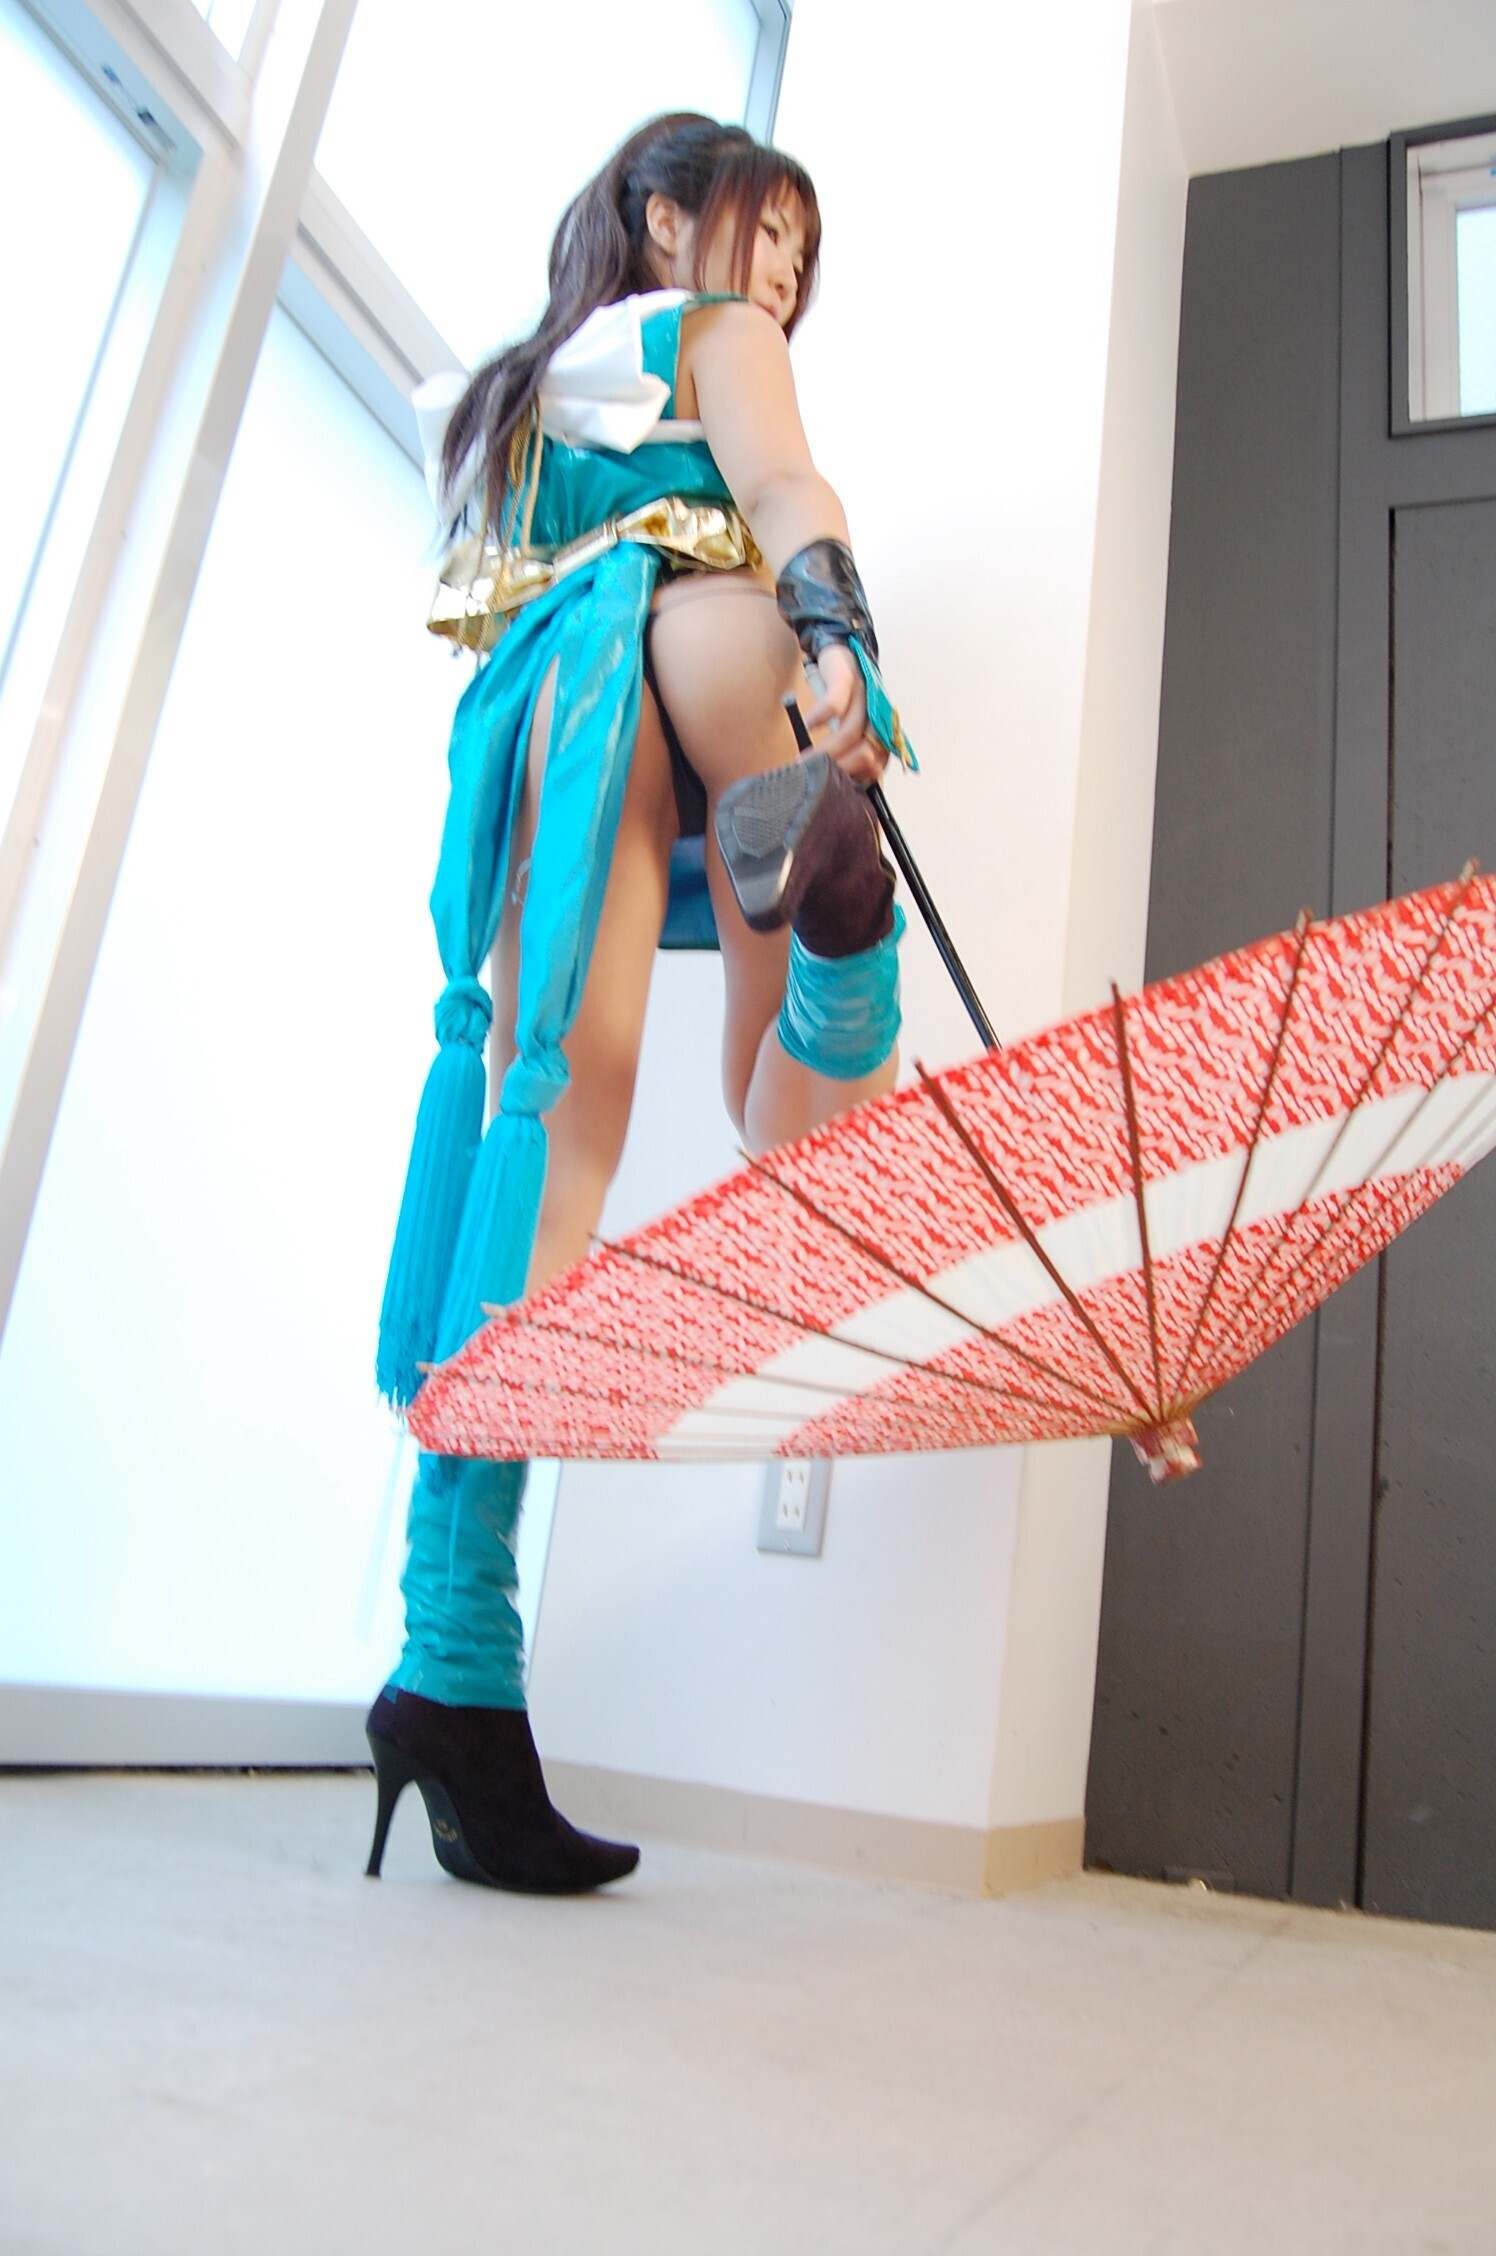 [CosPlay] 2012.12.04 系列套图之Maigreen 日本制服性感美女